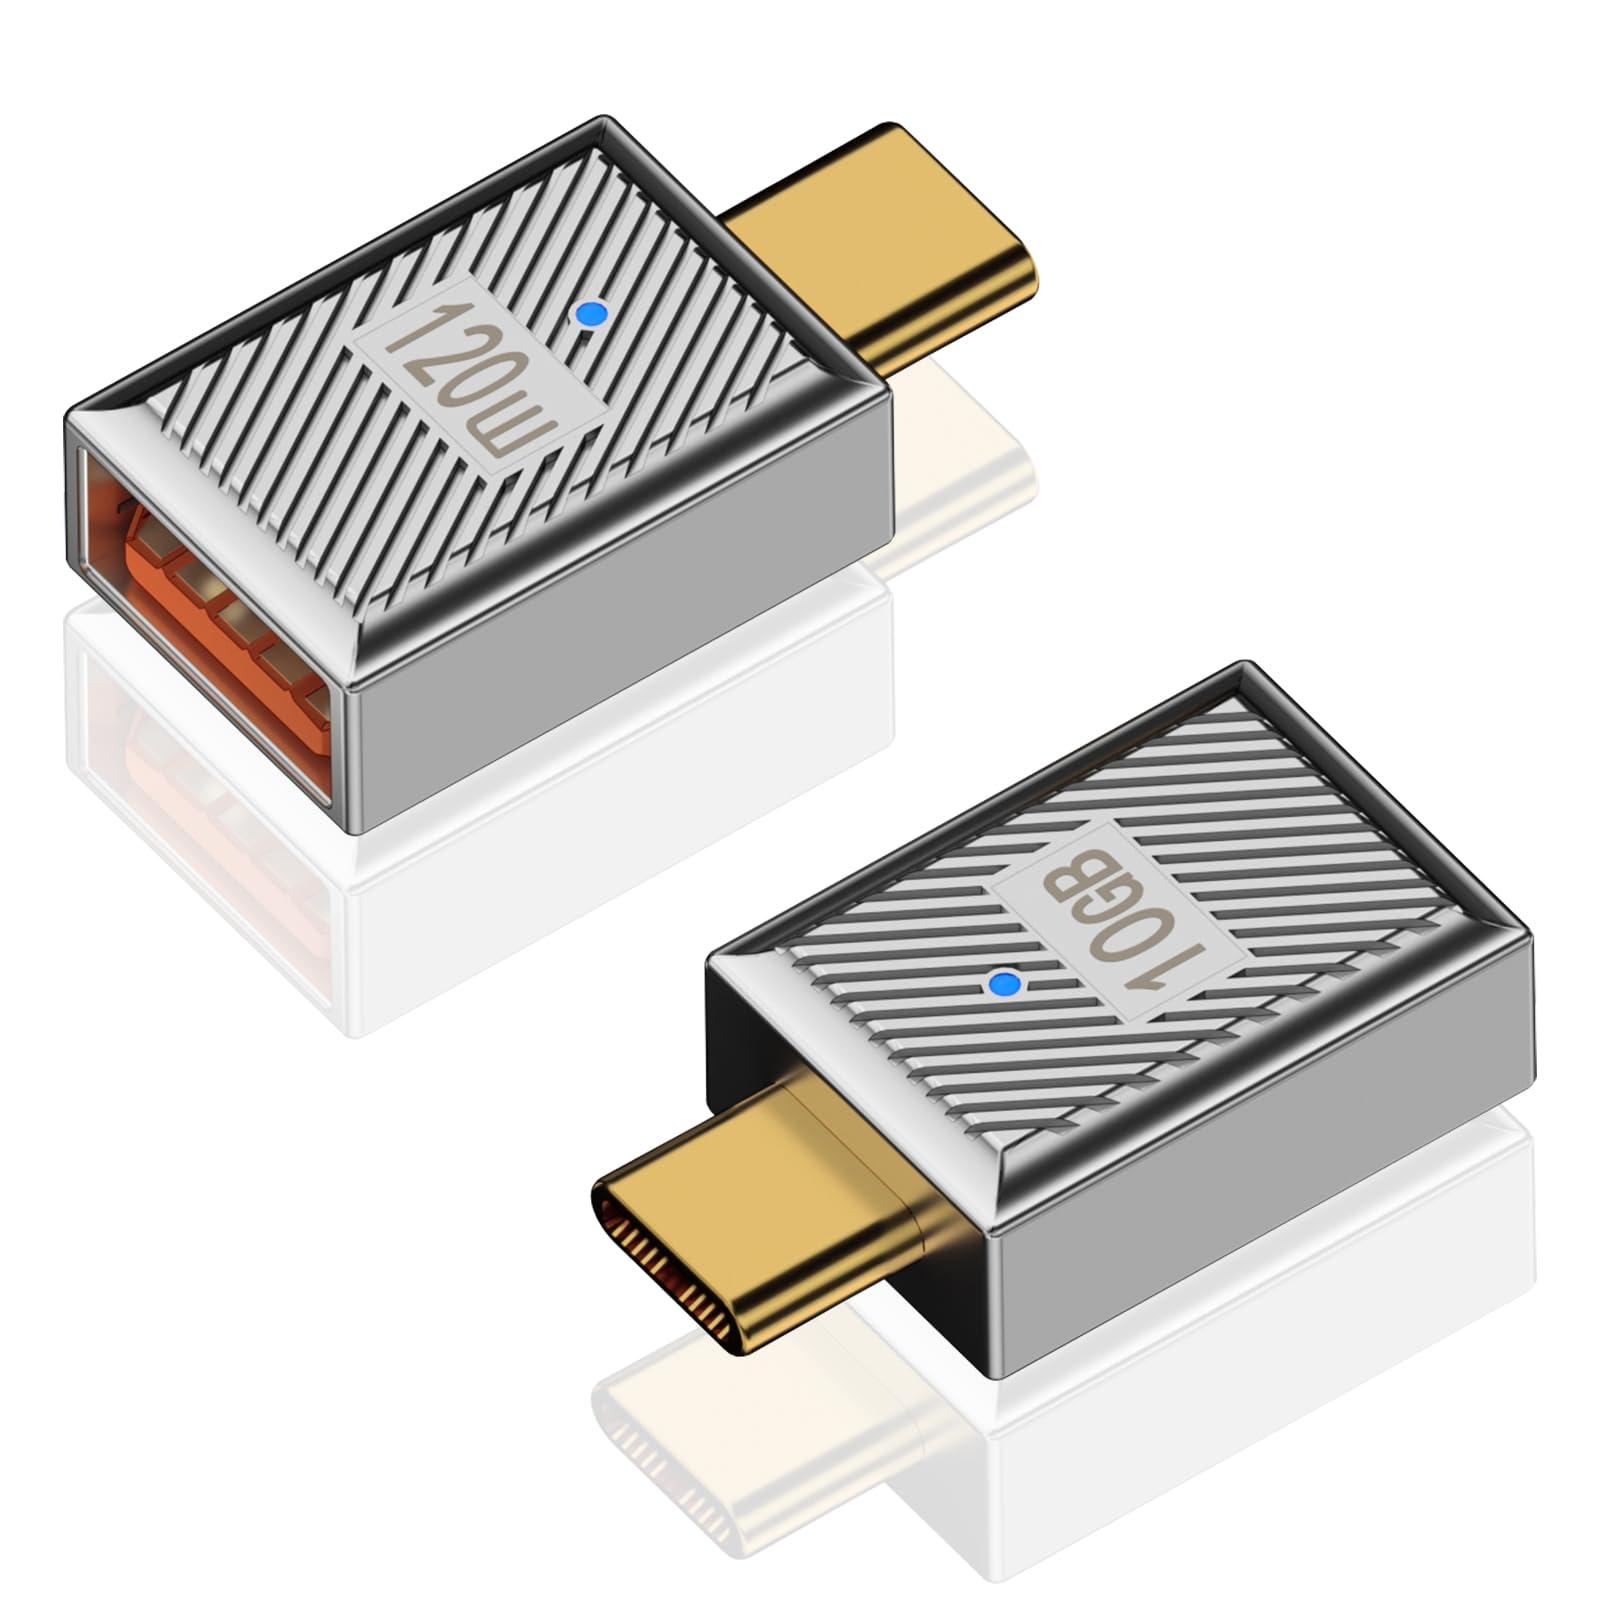 Duttek 10Gbps USB-C to USB-A変換アダプタは、120W USB-Cオス USBメス 変換アダプタ, 亜鉛合金製の両面USB AからUSB Cアダプターで、高速データ転送と高速充電を提供します。これは、ラップトップ、充電器、パワーバンクなどに使用することができます2個